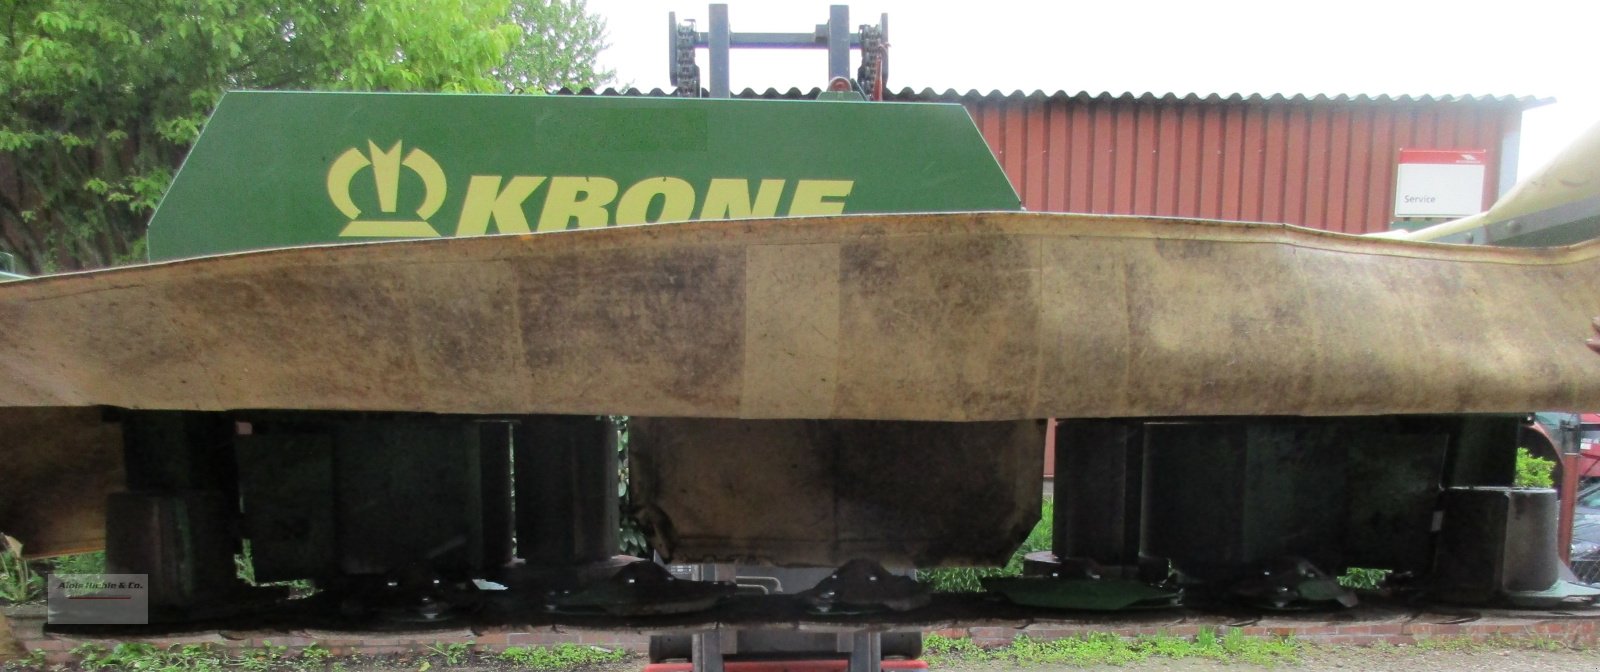 Mähwerk типа Krone Easy Cut 32, Gebrauchtmaschine в Tapfheim (Фотография 3)